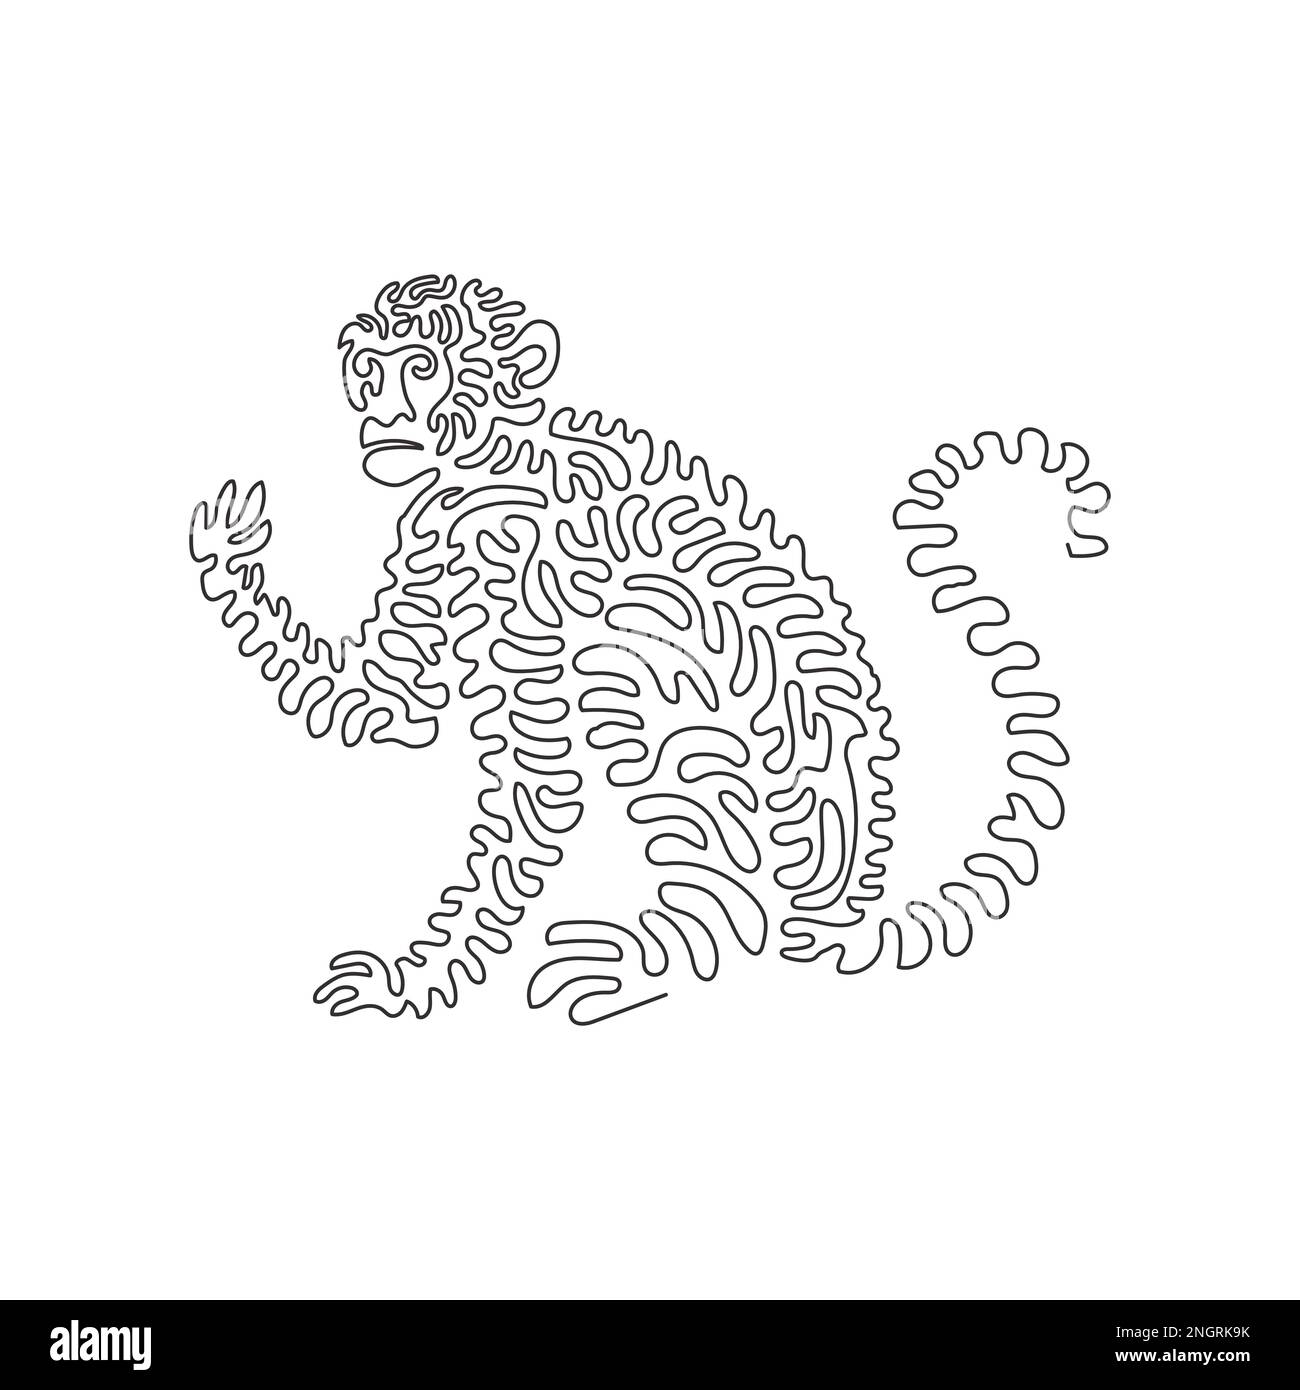 Un seul dessin d'une ligne d'un joli singe assis art abstrait Les illustrations vectorielles graphiques de dessin en ligne continue de singes sont très sociales Illustration de Vecteur